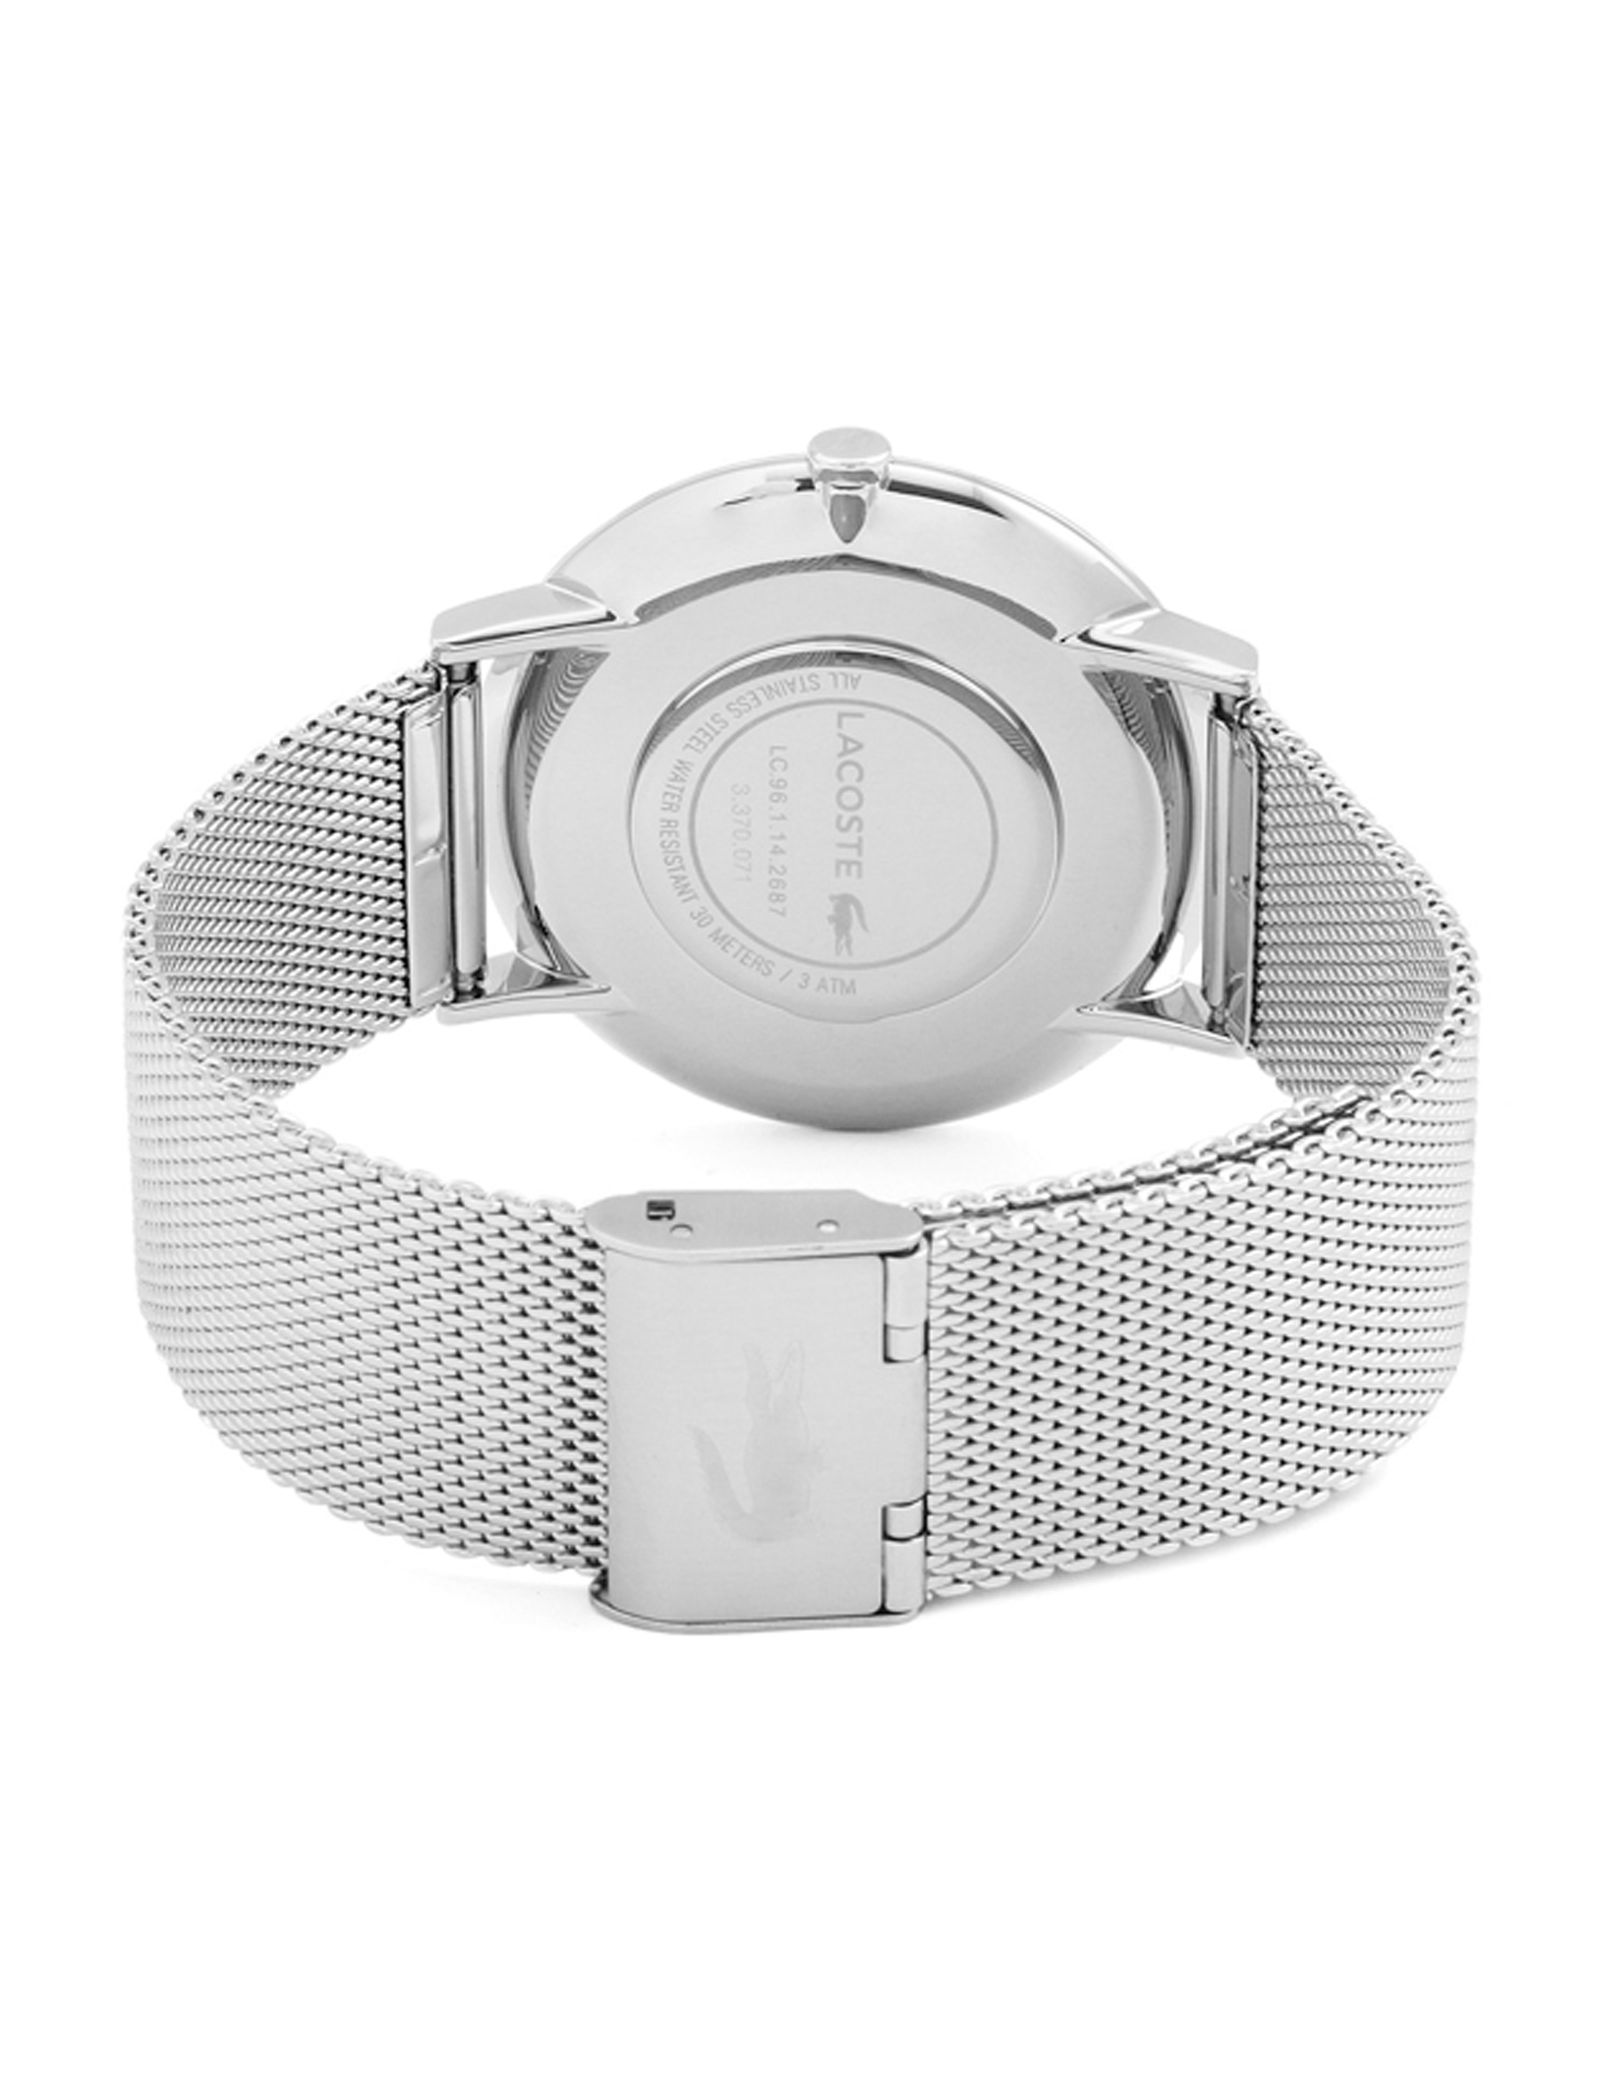 ساعت مچی عقربه ای مردانه لاگوست مدل 2010900 - نقره ای - 3